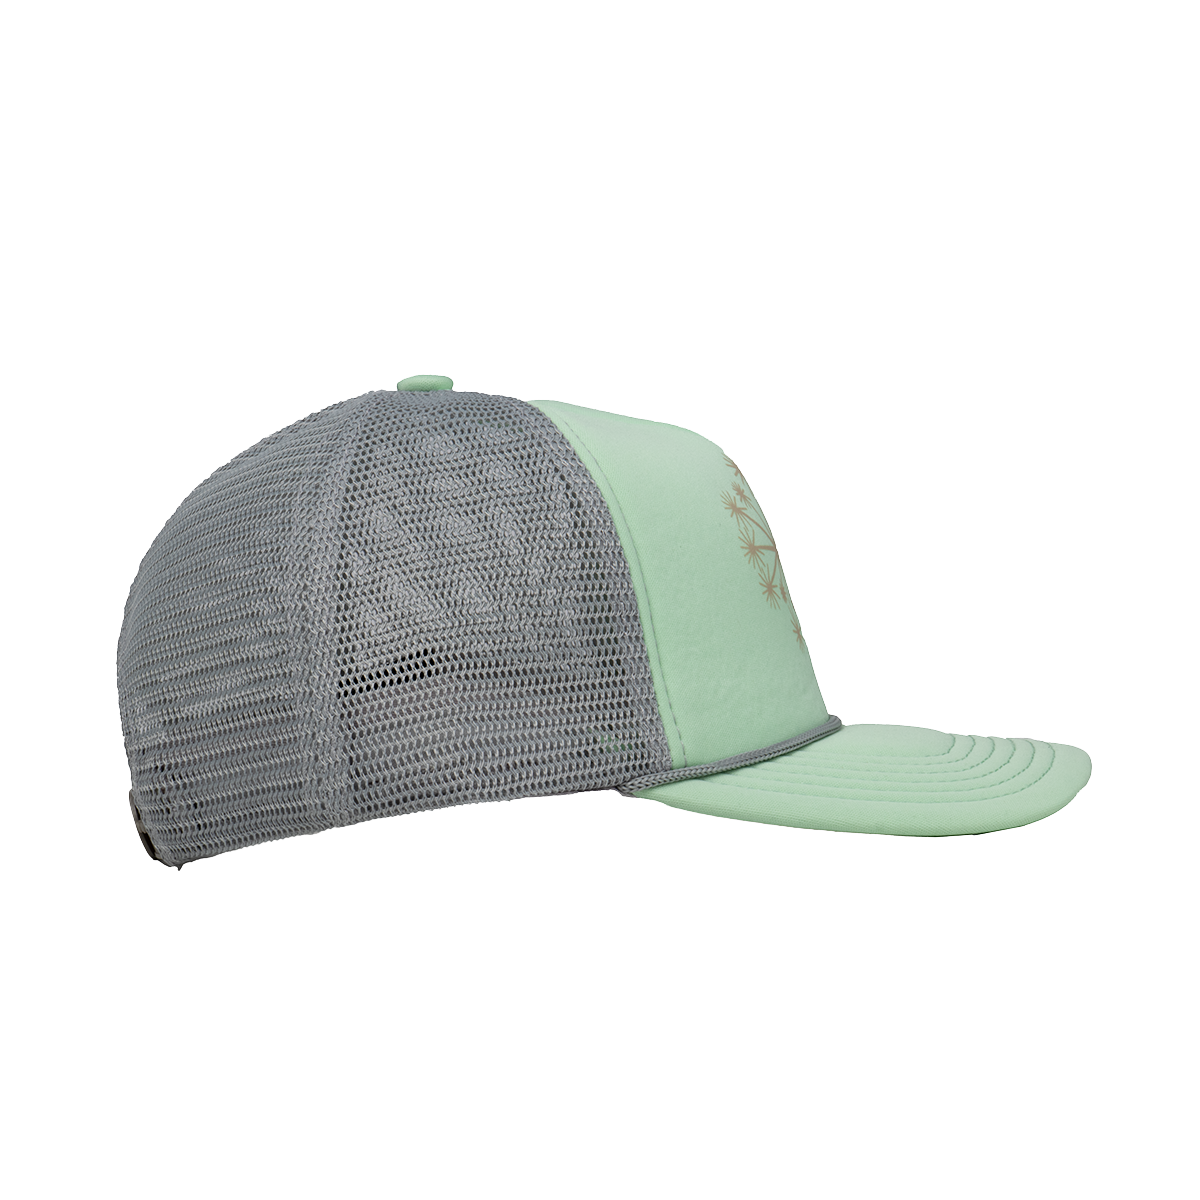 Dandelion Foam Trucker Hat - Mint/Light Gray